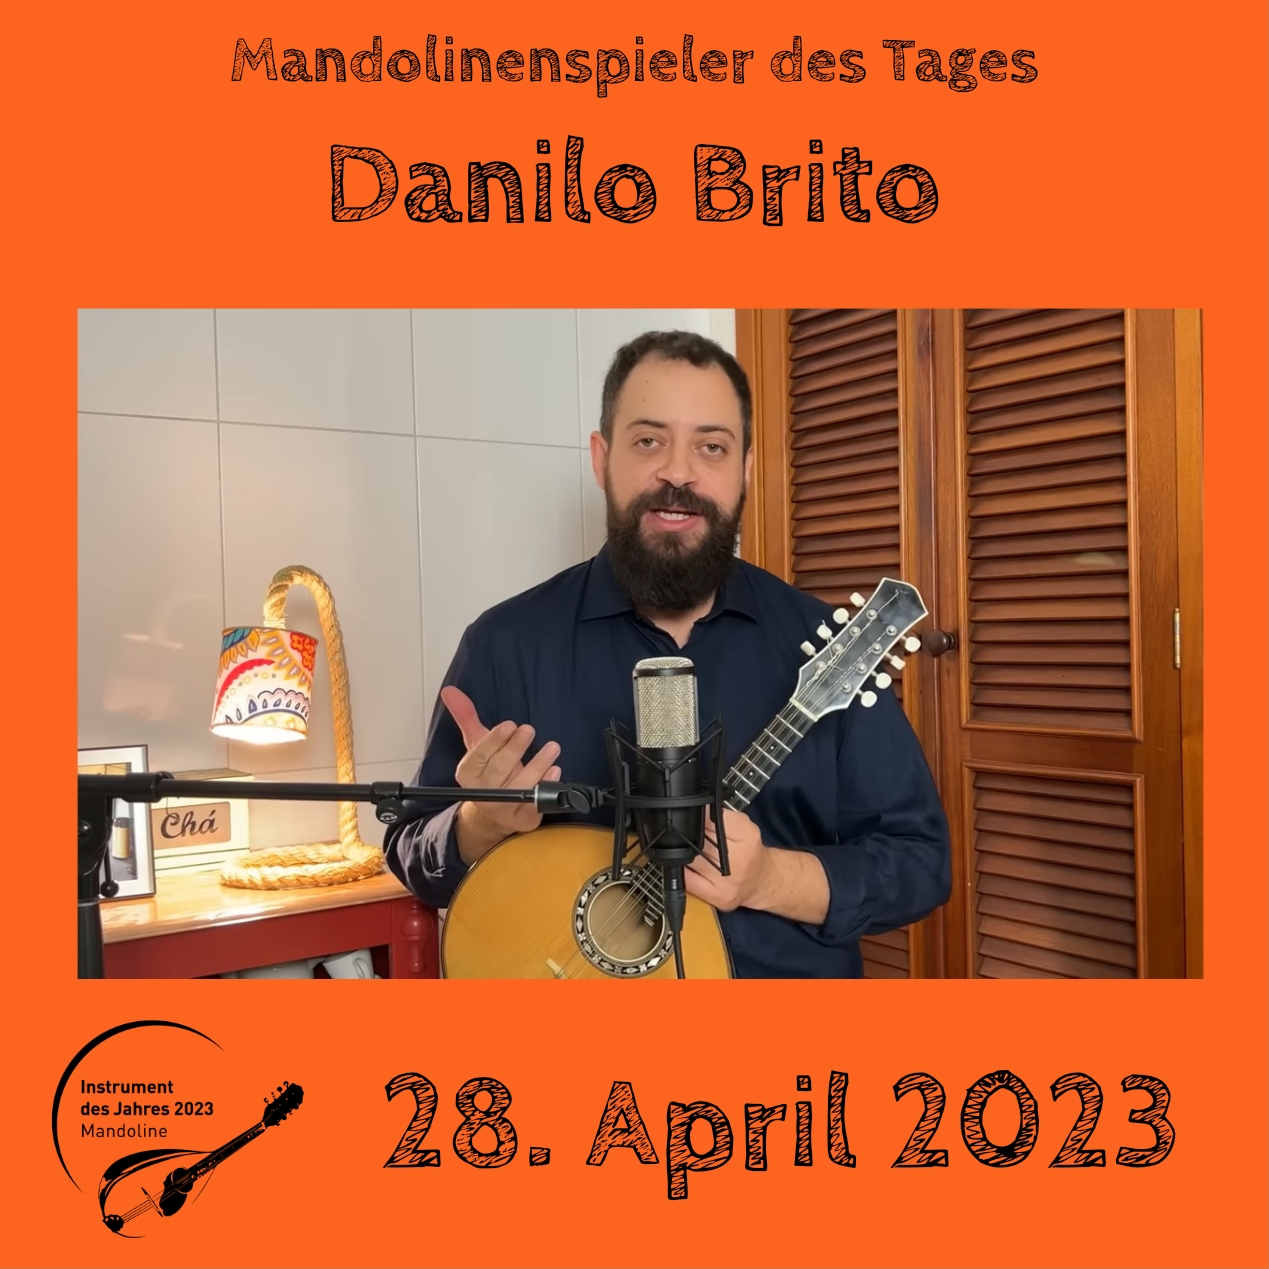 Danilo Brito Instrument des Jahres 2023 Mandolinenspieler Mandolinenspielerin des Tages